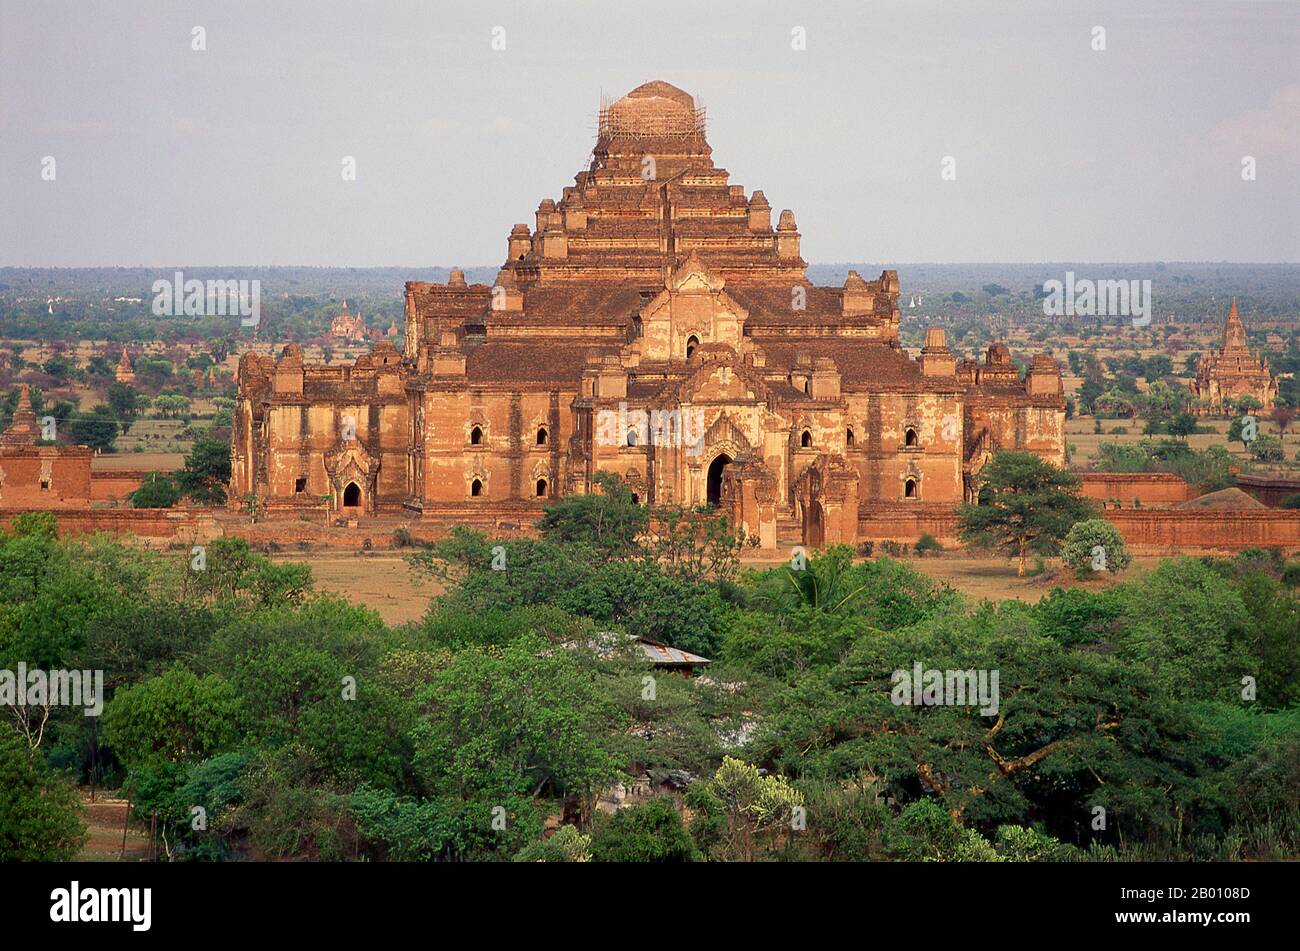 Birmania: Templo Dhammayangyi, Ciudad Antigua de Bagan (pagan). El templo de Dhammayangyi es el templo más grande de Bagan y fue construido durante el reinado del rey Narathu (1167-1170). Bagan, antes pagano, fue construido principalmente entre el siglo 11th y el siglo 13th. Formalmente titulado Arimaddanapura o Arimaddana (la ciudad del cruzado enemigo) y también conocido como Tambadipa (la tierra del cobre) o Tassadessa (la tierra parchada), era la capital de varios reinos antiguos en Birmania. Foto de stock